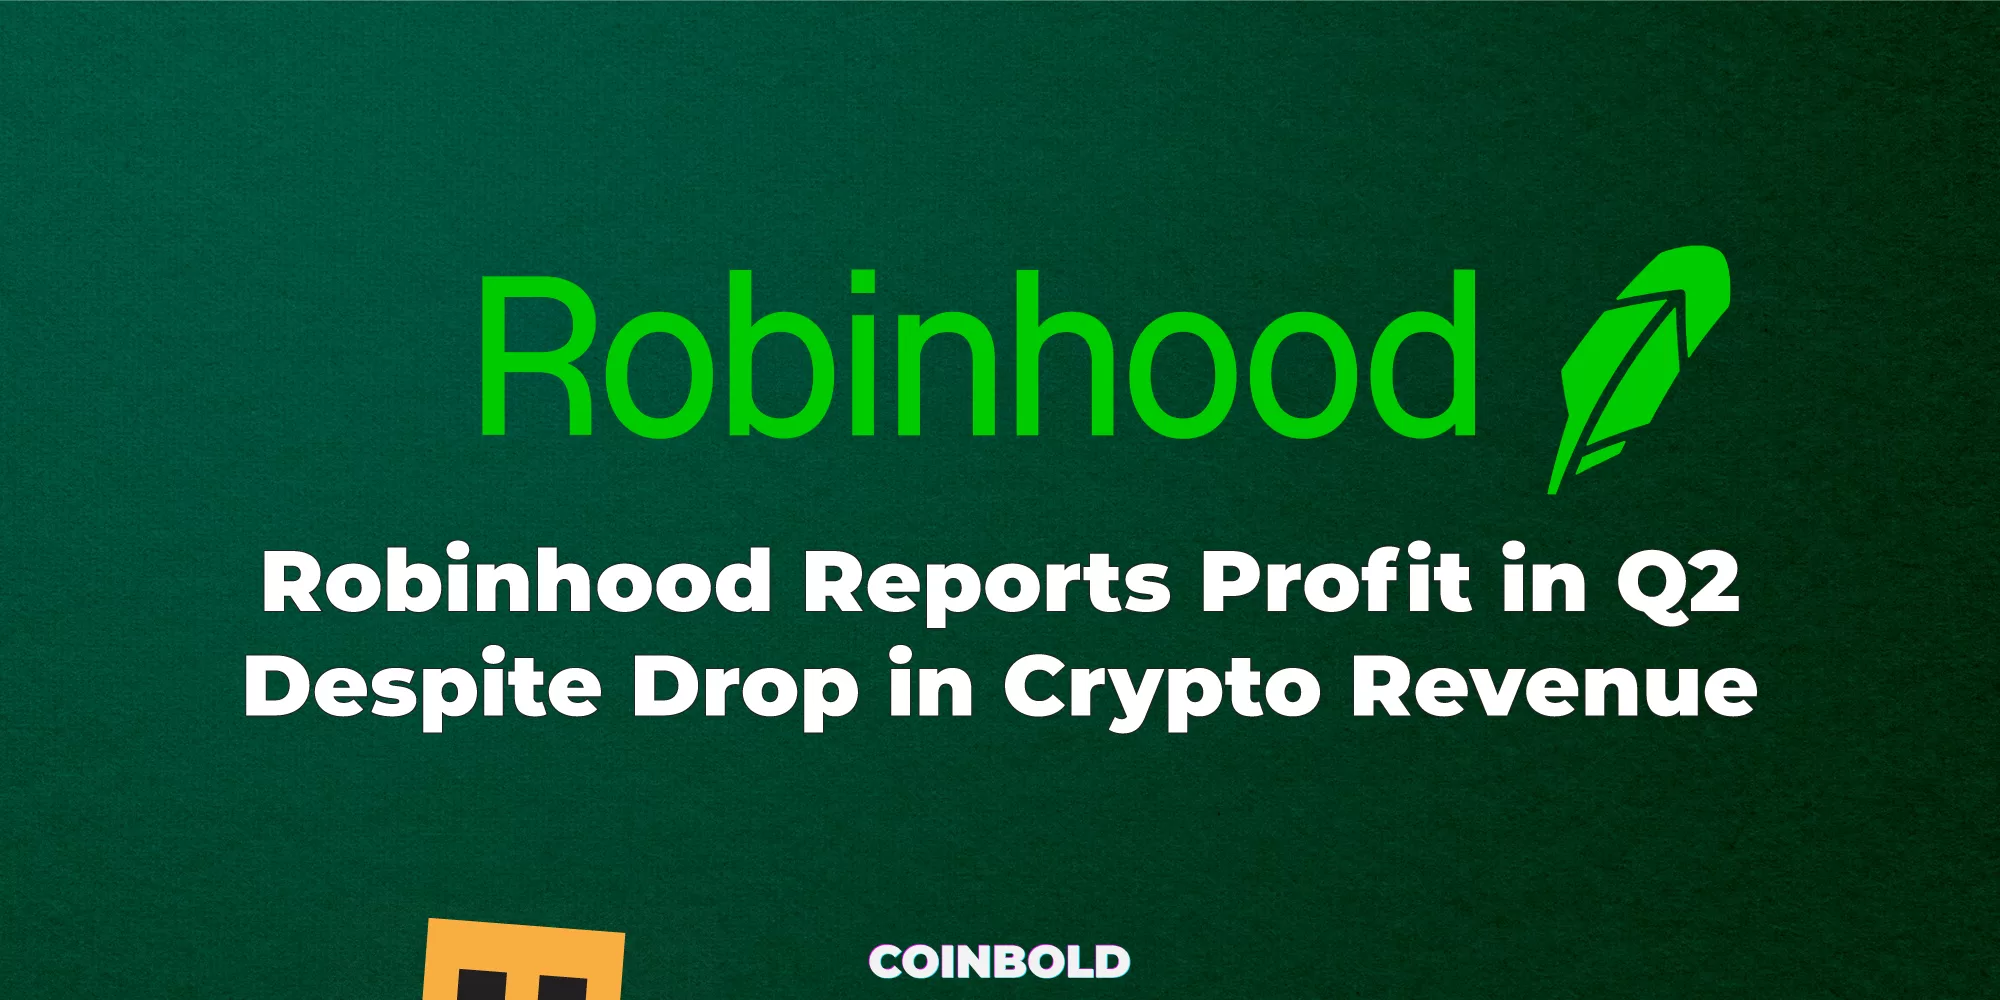 Robinhood Reports Profit in Q2 Despite Drop in Crypto Revenue